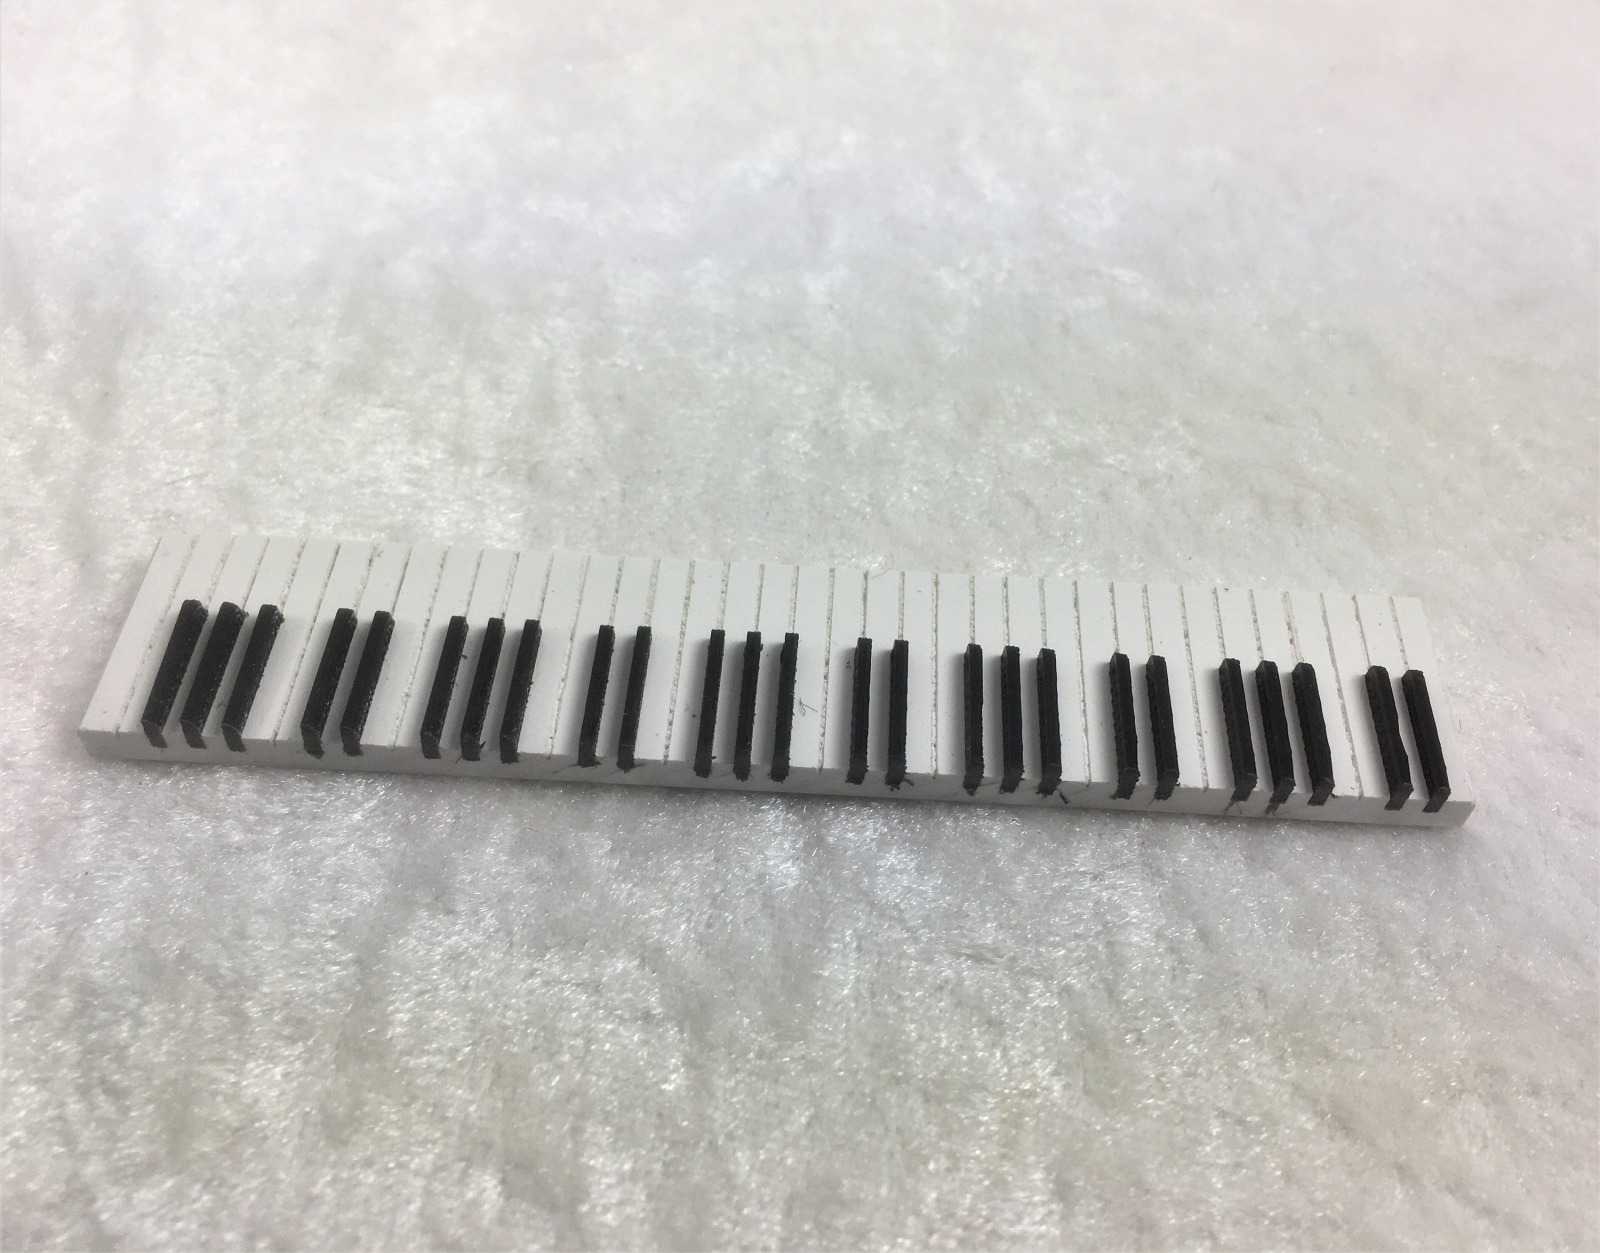 Klaviertastatur Pianotastatur Orgeltastatur zum einbauen in ihr eigenes hergestelltes Instrument für das Puppenhaus Miniatur 1zu12 5